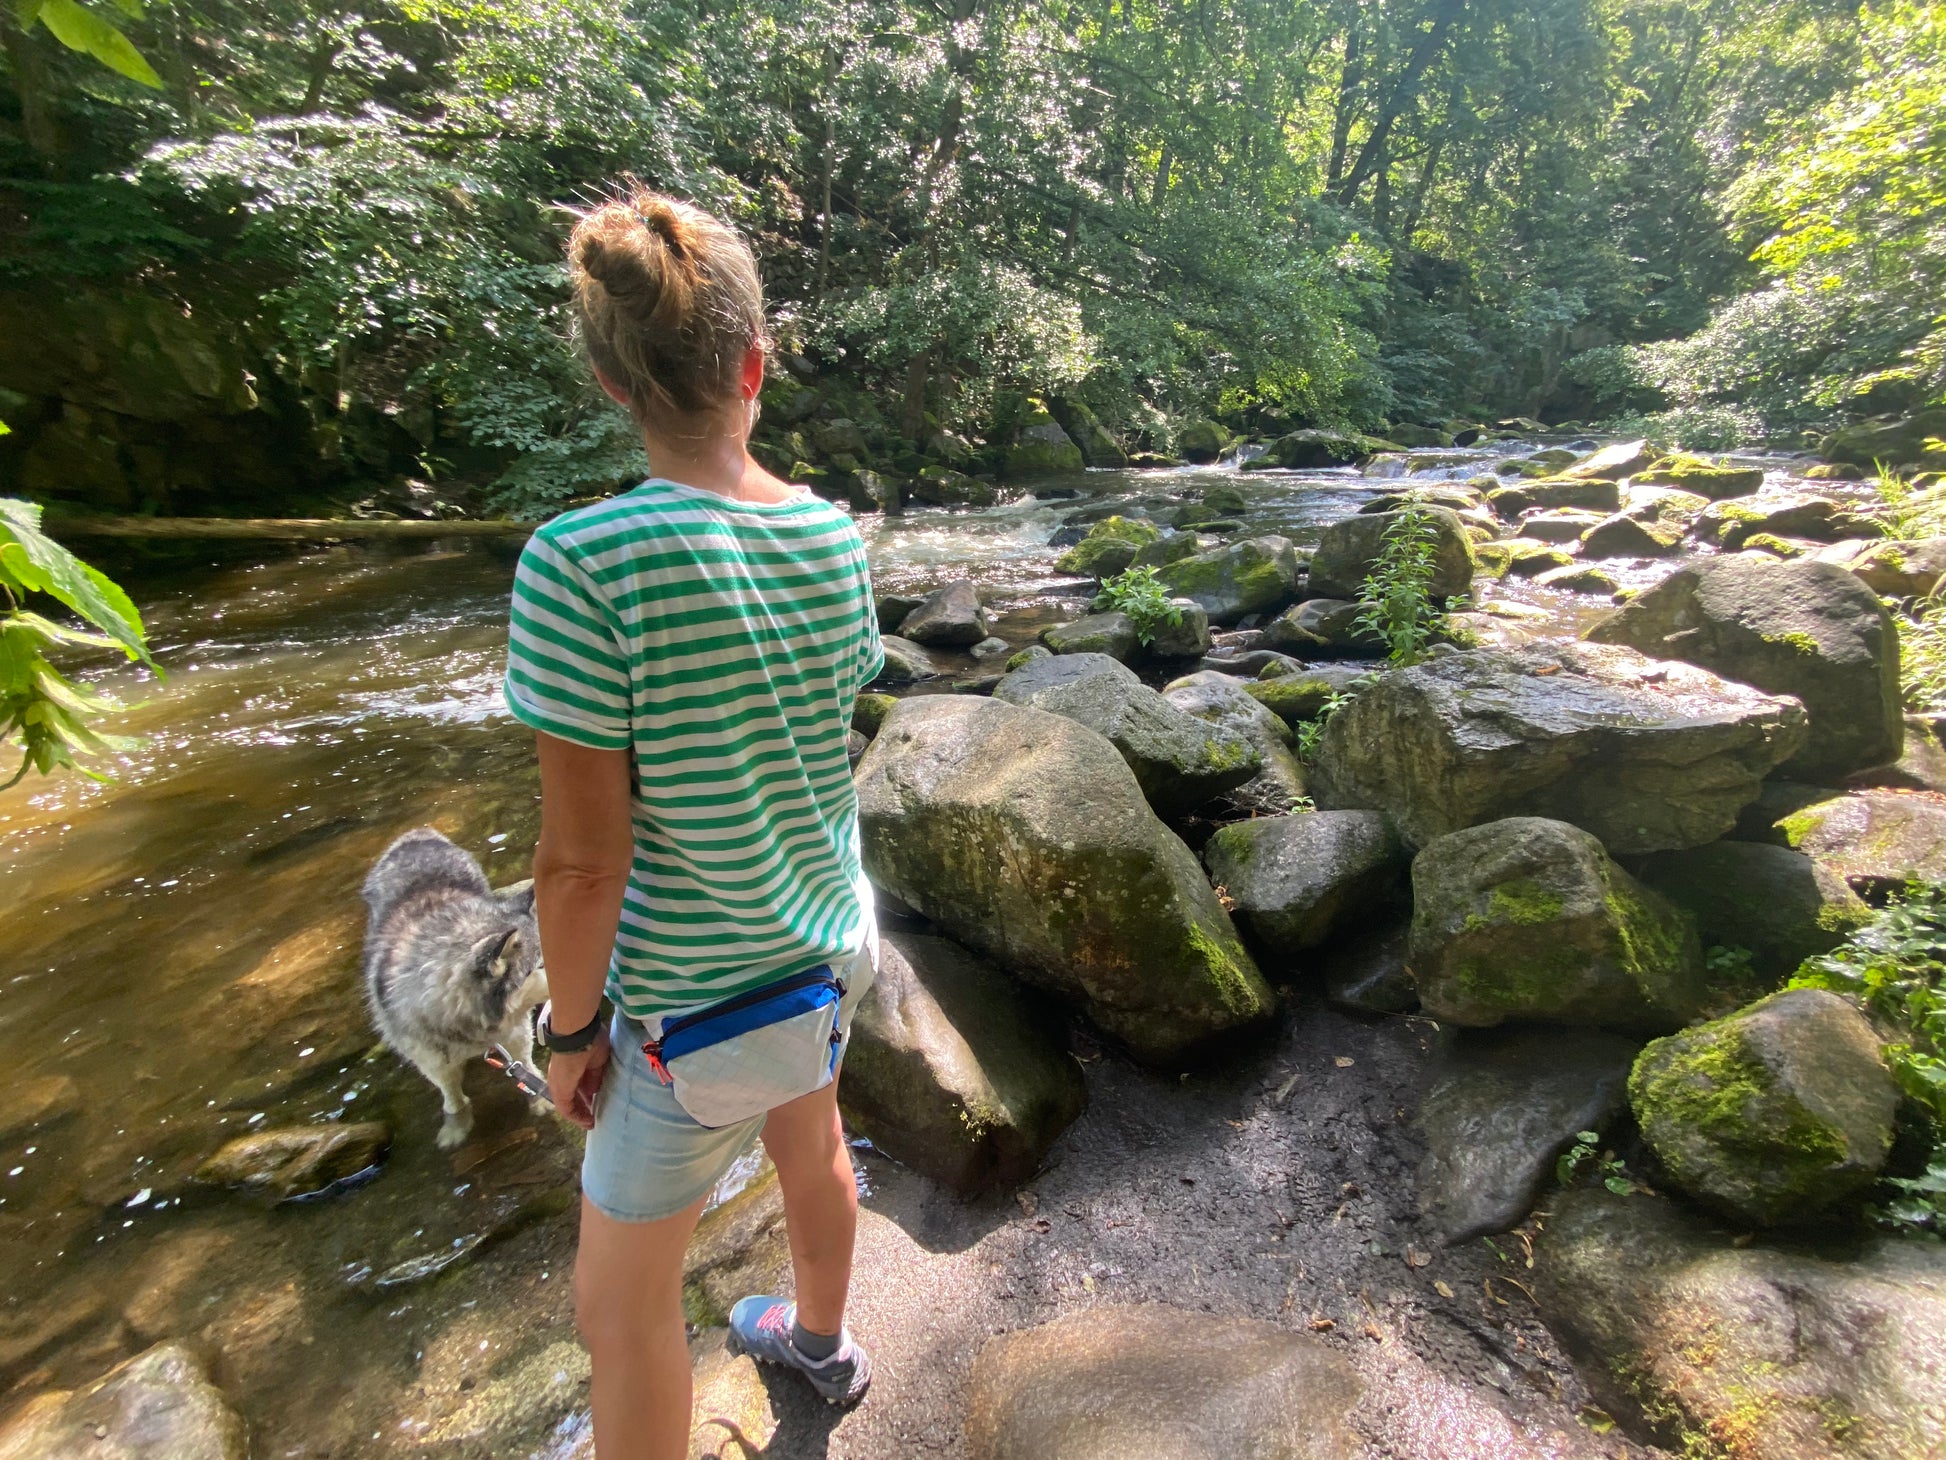 Frau trägt blau-weiße ultraleichte Hüfttasche am Fluss, die Farben hat sie sich selbst ausgesucht